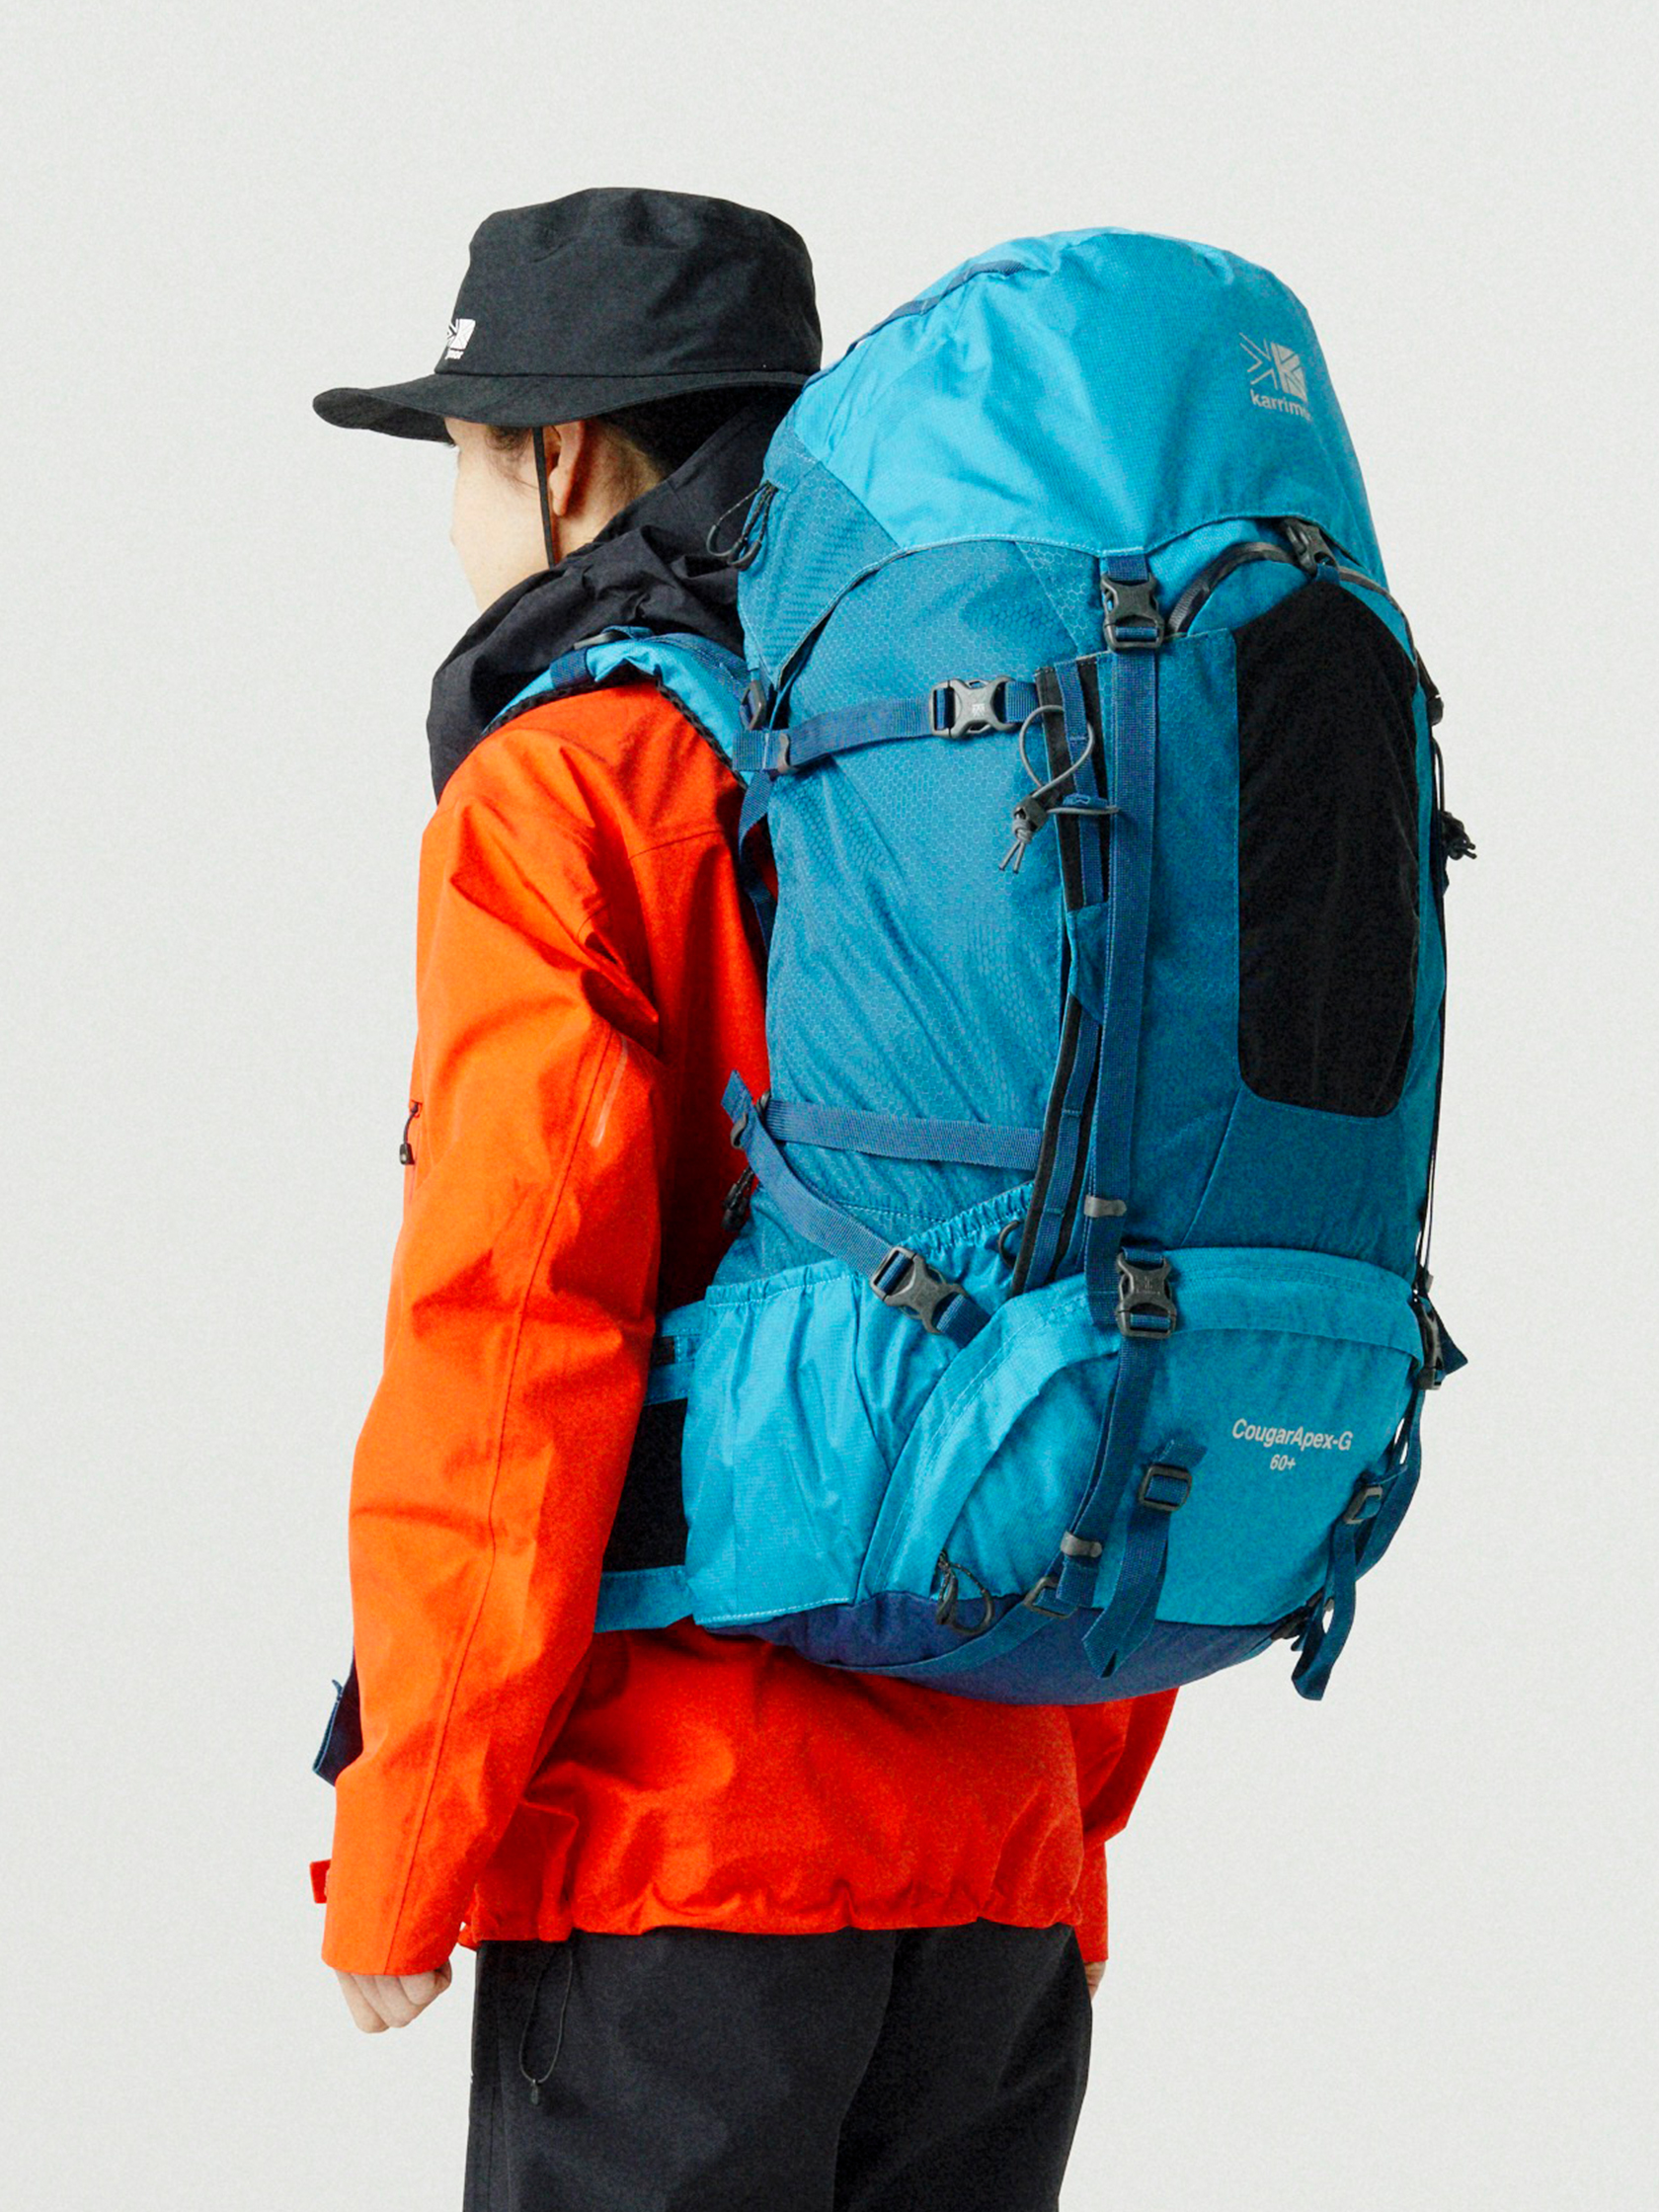 アウトドア 登山用品 CougarApex-G 60+ | karrimor カリマー | リュックサック・アウトドア 